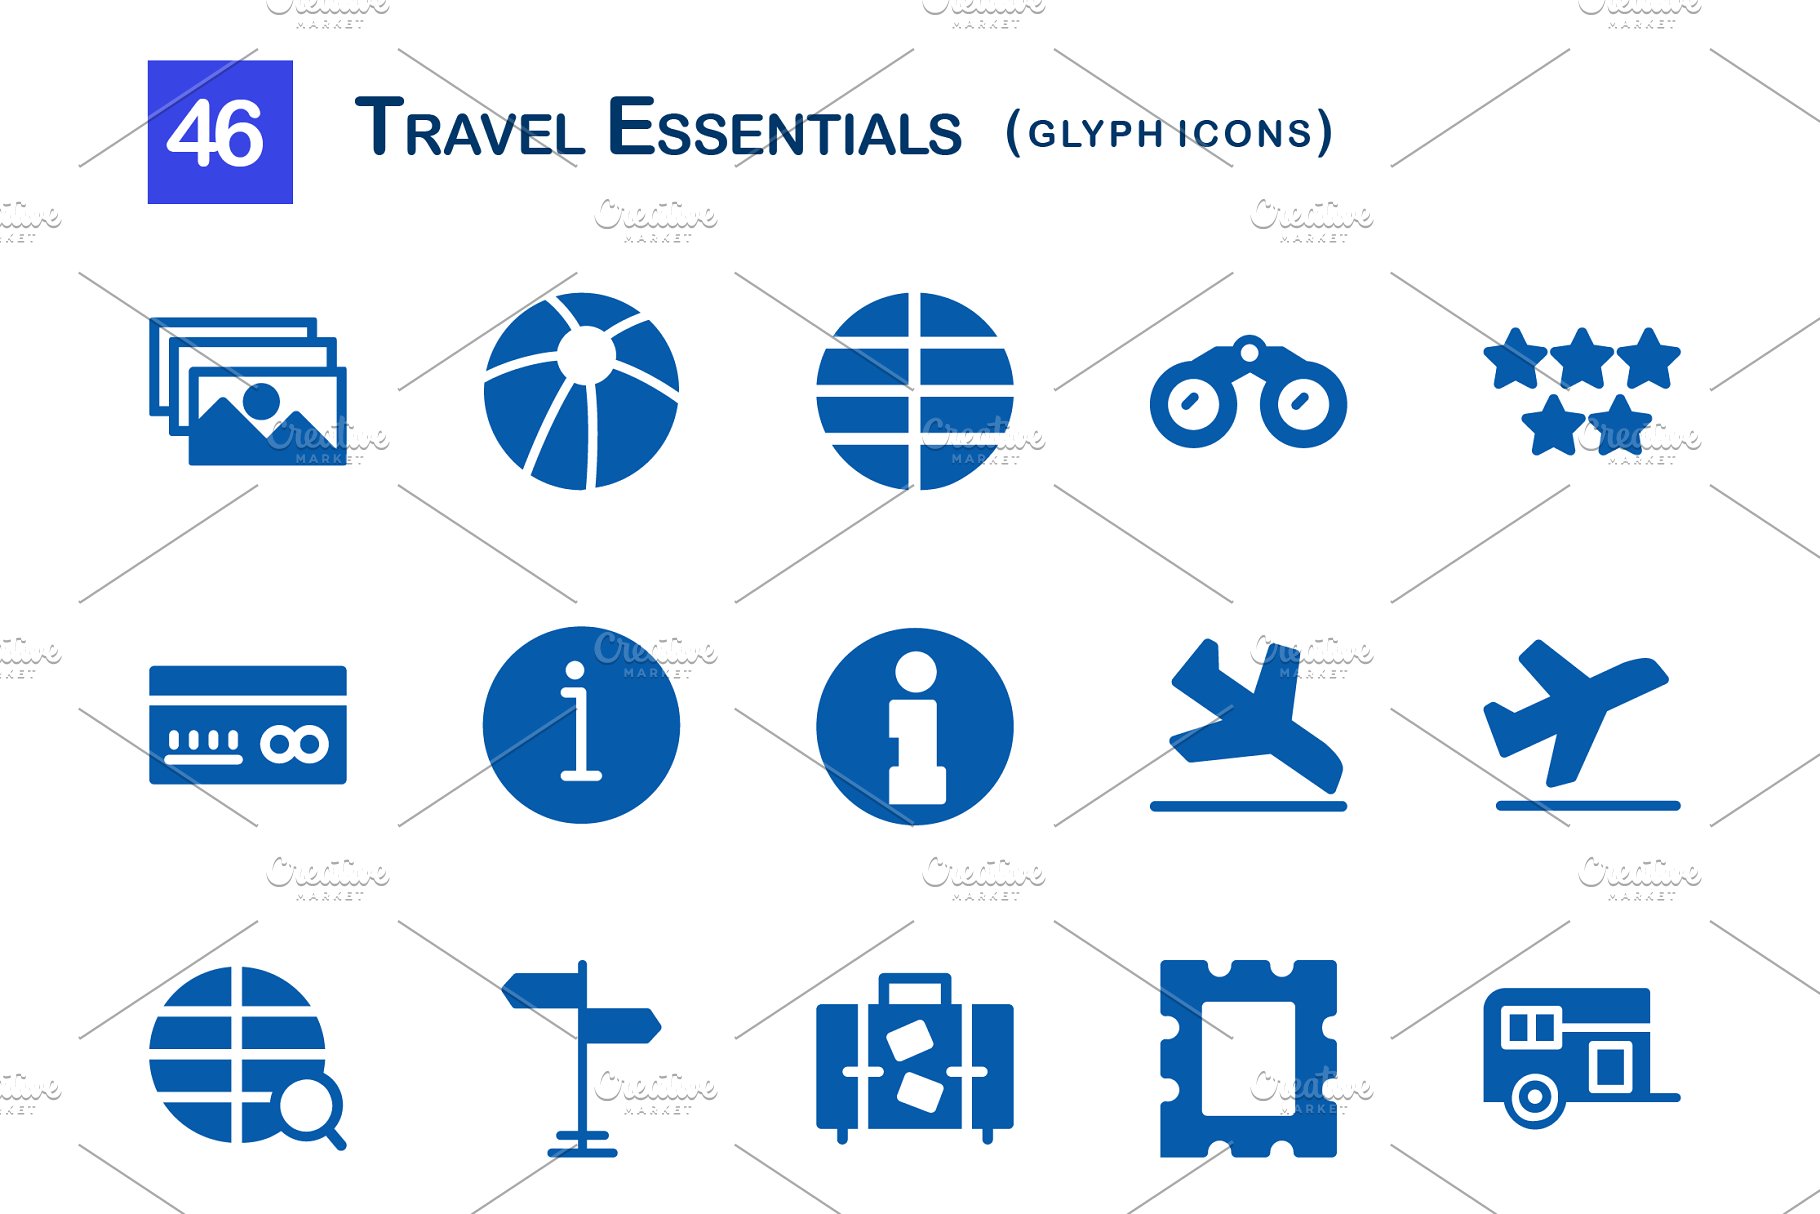 46个旅行必需品主题图标 46 Travel Essentials Glyph Icons插图(1)